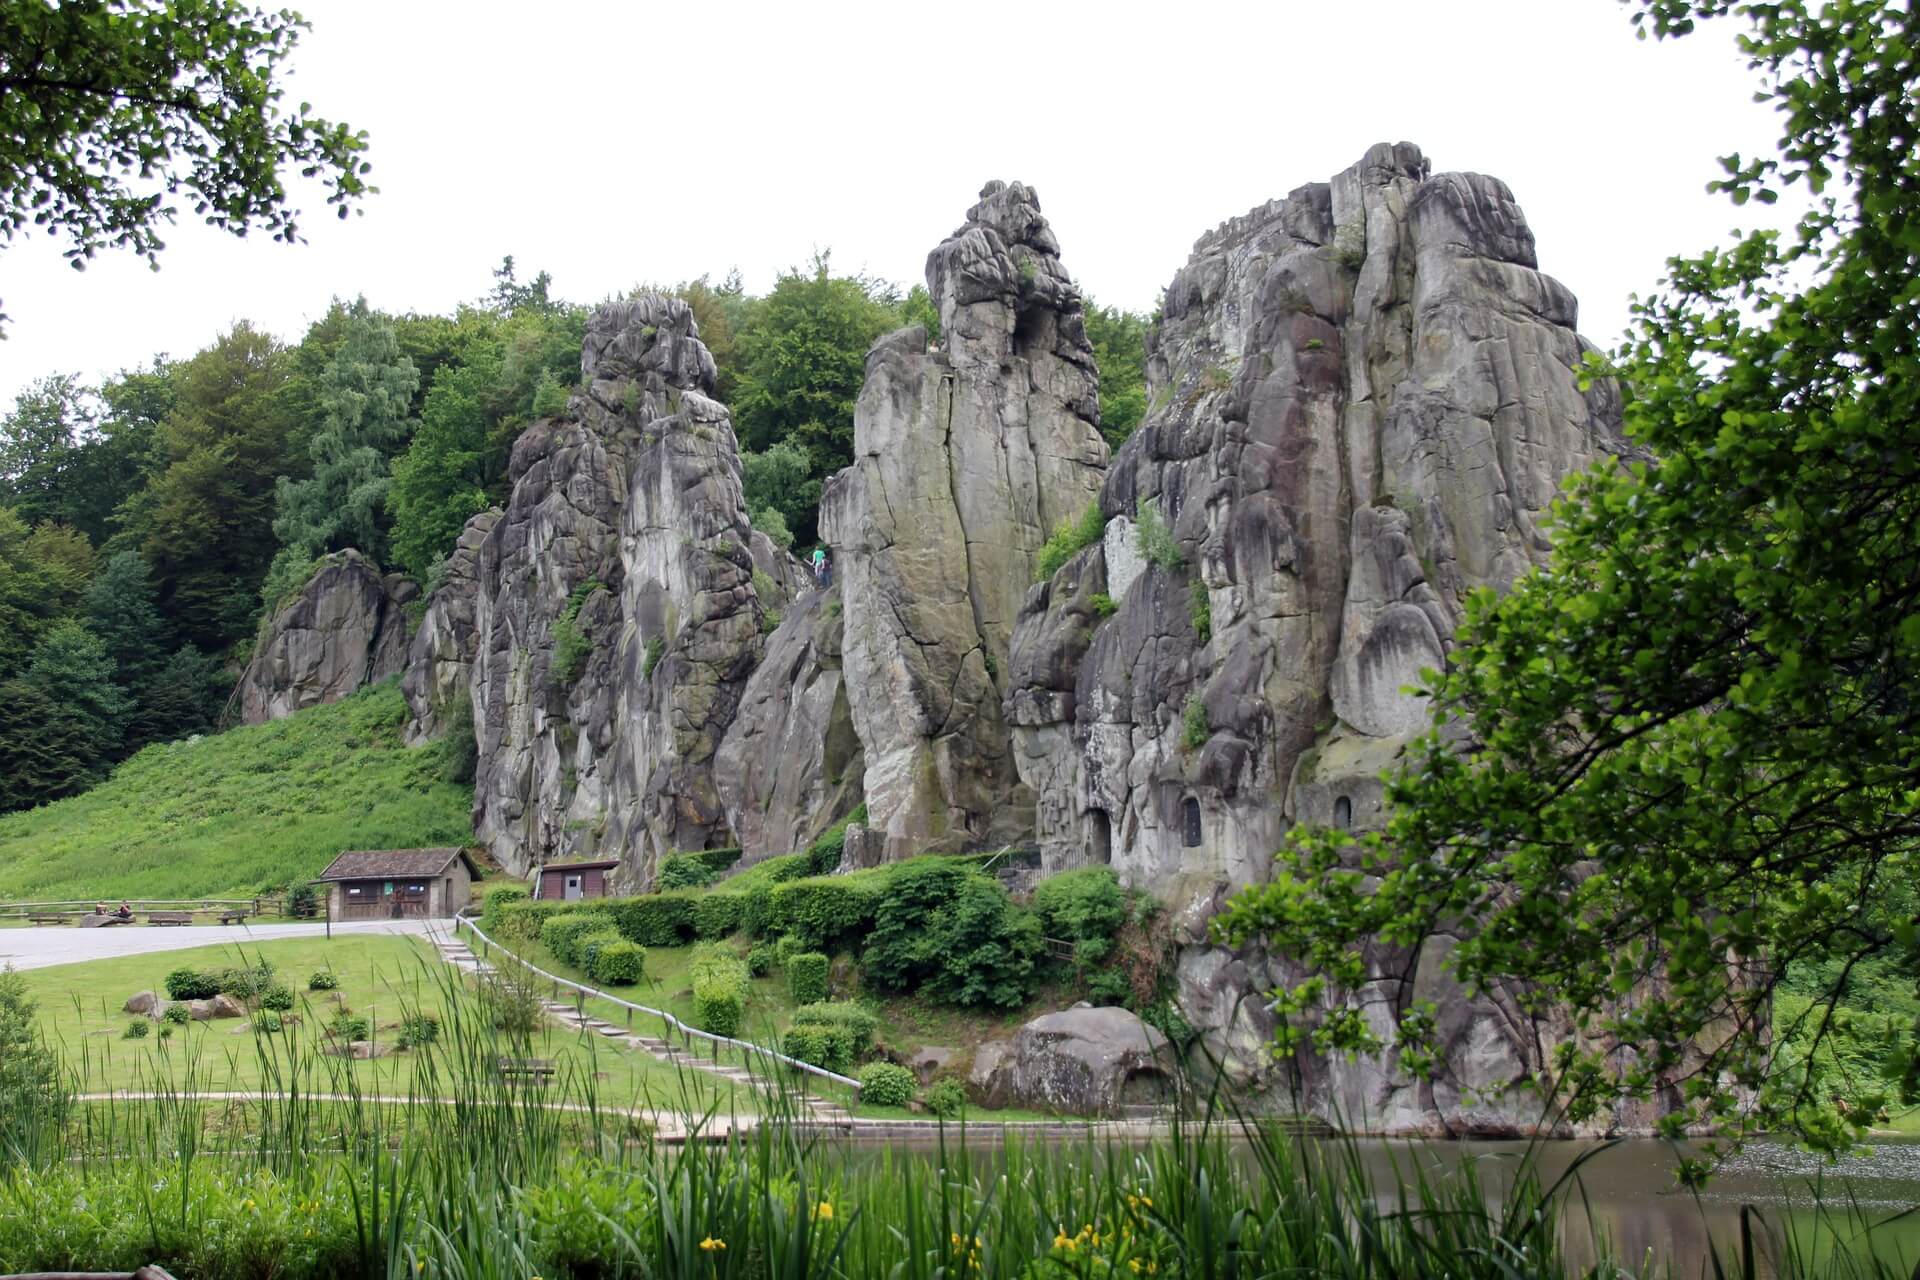 Die Externsteine sind eine uralte Felsformation in der Nähe von Paderborn und Detmold. Ihr Ursprung ist unklar, aber Wissenschaftler vermuten, dass Wasser dem Sandstein seine markante Form gegeben hat. Um die Natursehenswürdigkeit zu besuchen, parken wir im nahegelegenen Dorf Holzhausen-Externsteine und wandern etwa eine Viertelstunde durch den Wald. 